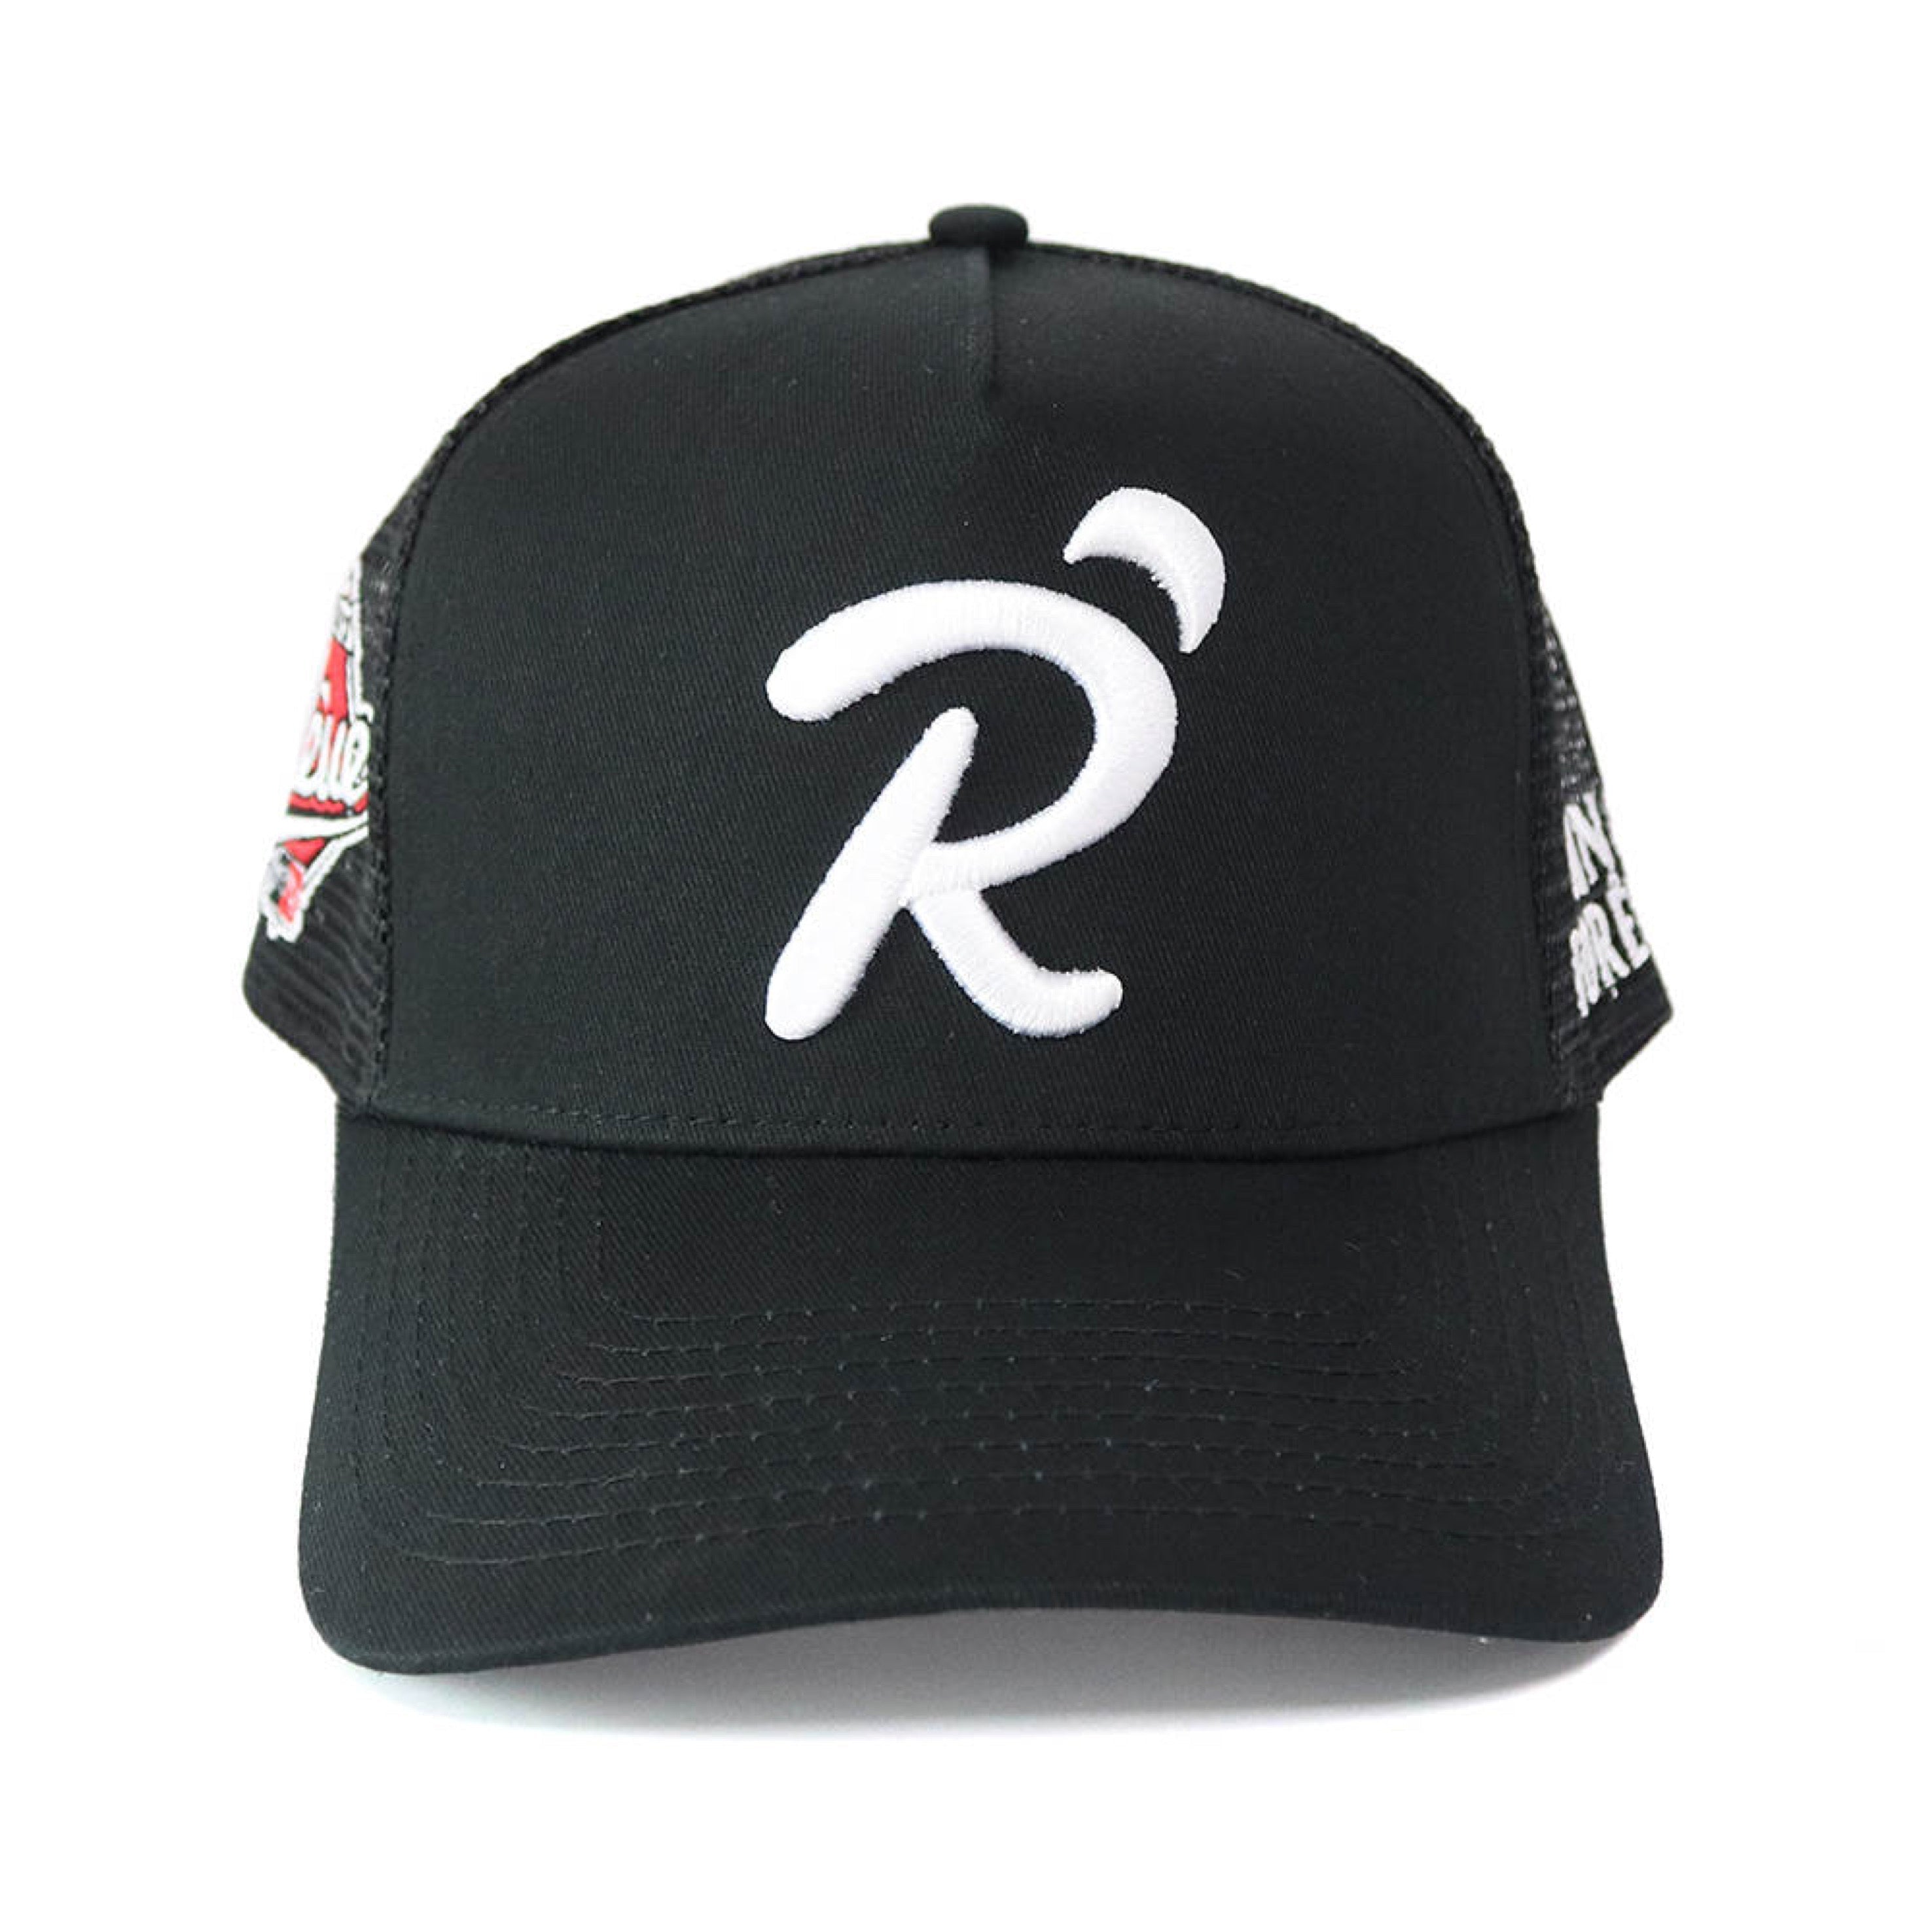 R SCRIPT TRUCKER HATS